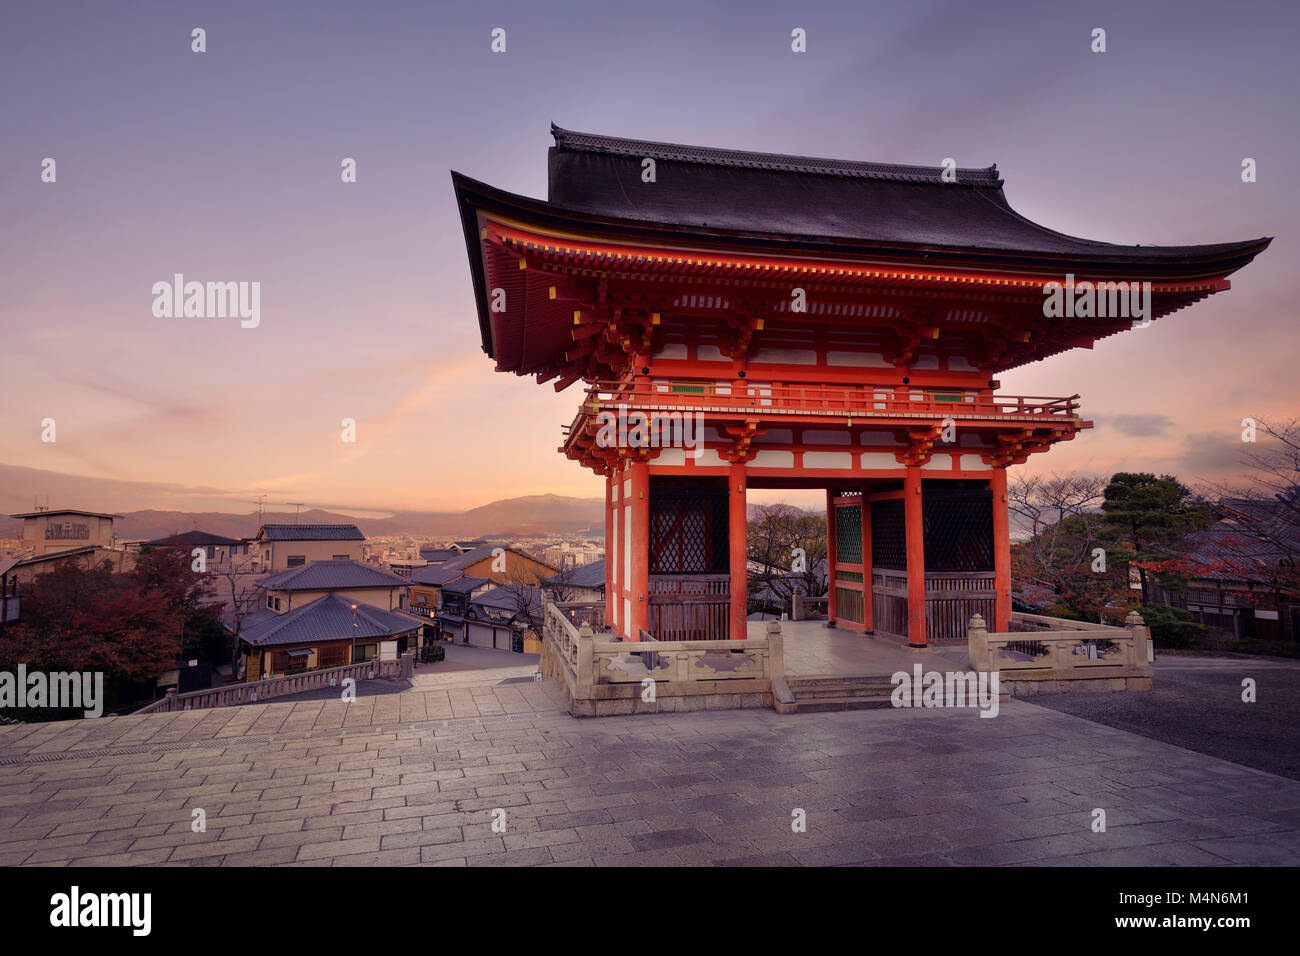 Lizenz verfügbar am MaximImages.com - Nio-mon-Tor des buddhistischen Kiyomizu-dera-Tempels in einer Morgenlandschaft bei Sonnenaufgang. Zweistöckiges Romon-Tor mit Kyoto Stockfoto